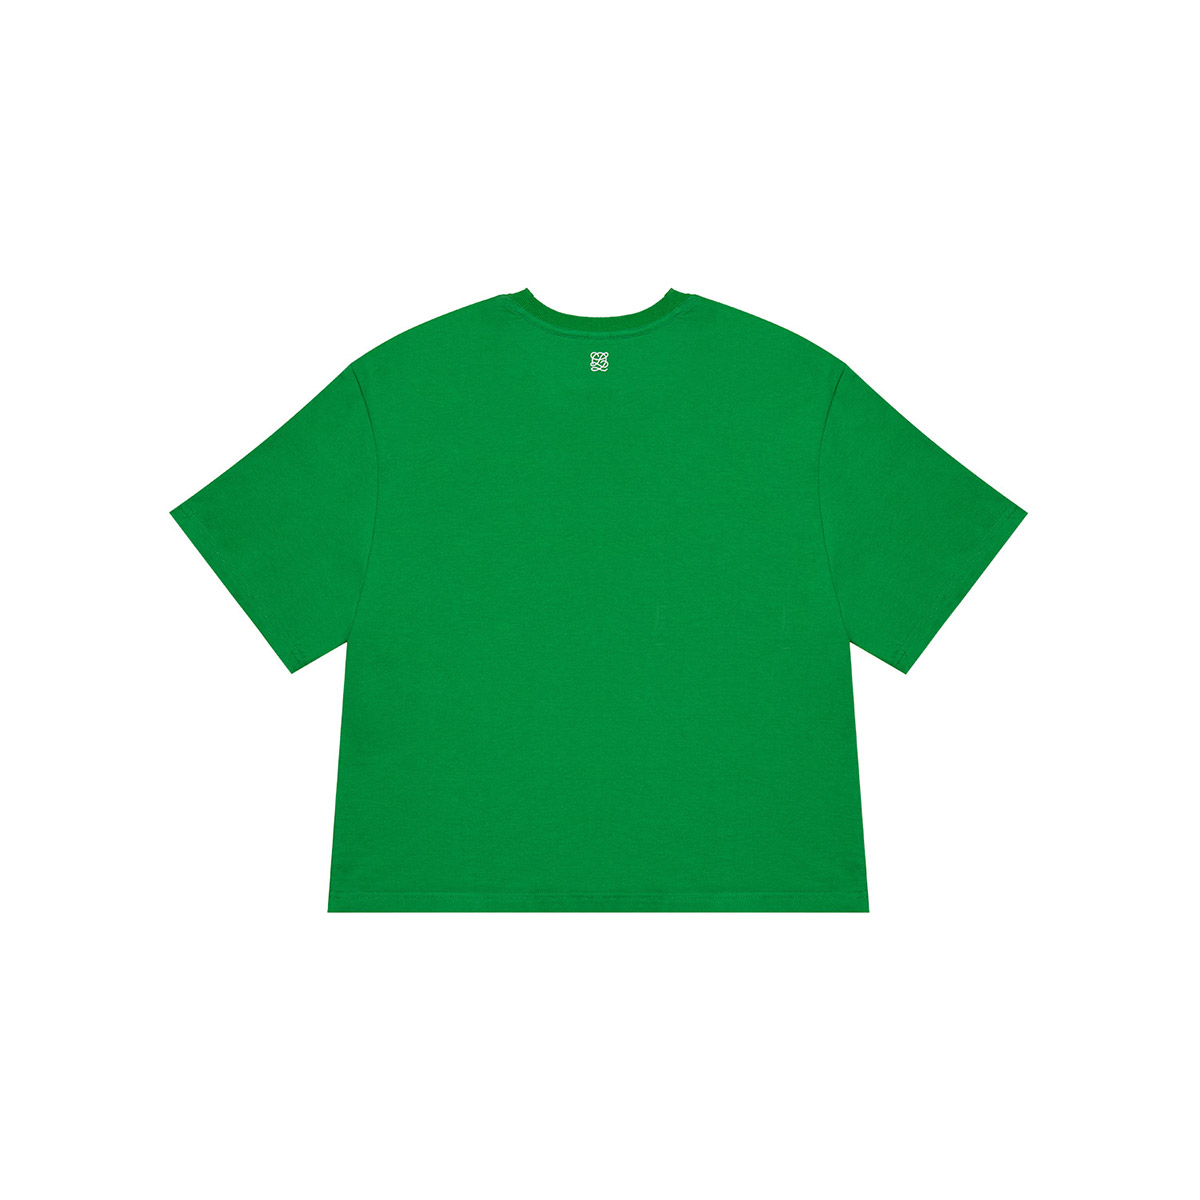 EUDON CHOI COLLECTION 티셔츠 AR1BA09GR